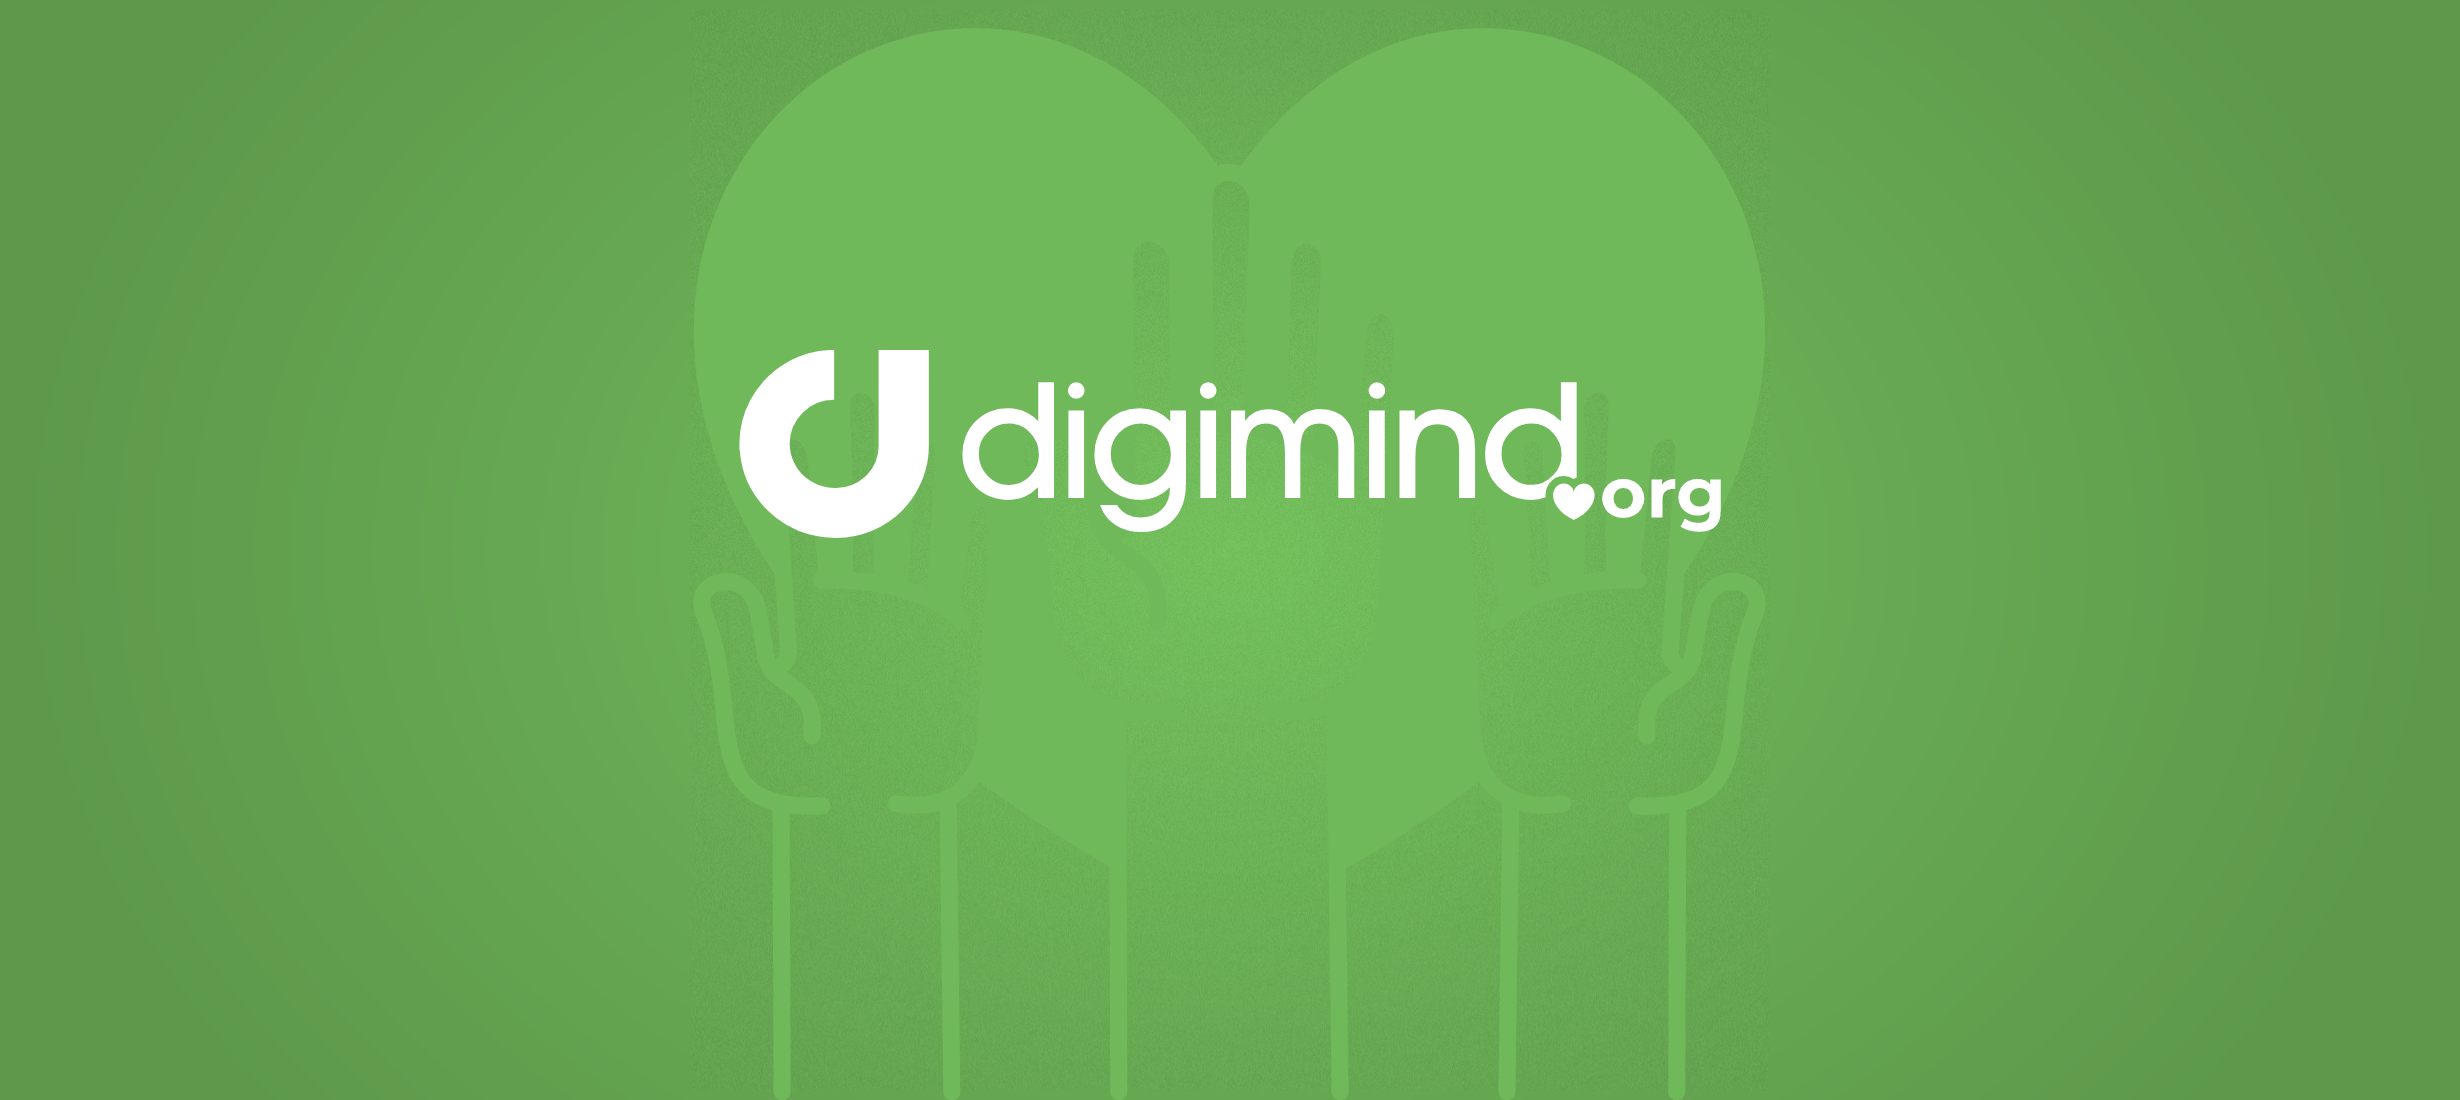 Digimind.org : un programme donnant un accès privilégié à ses outils d’écoute des média sociaux aux associations caritatives et aux écoles.